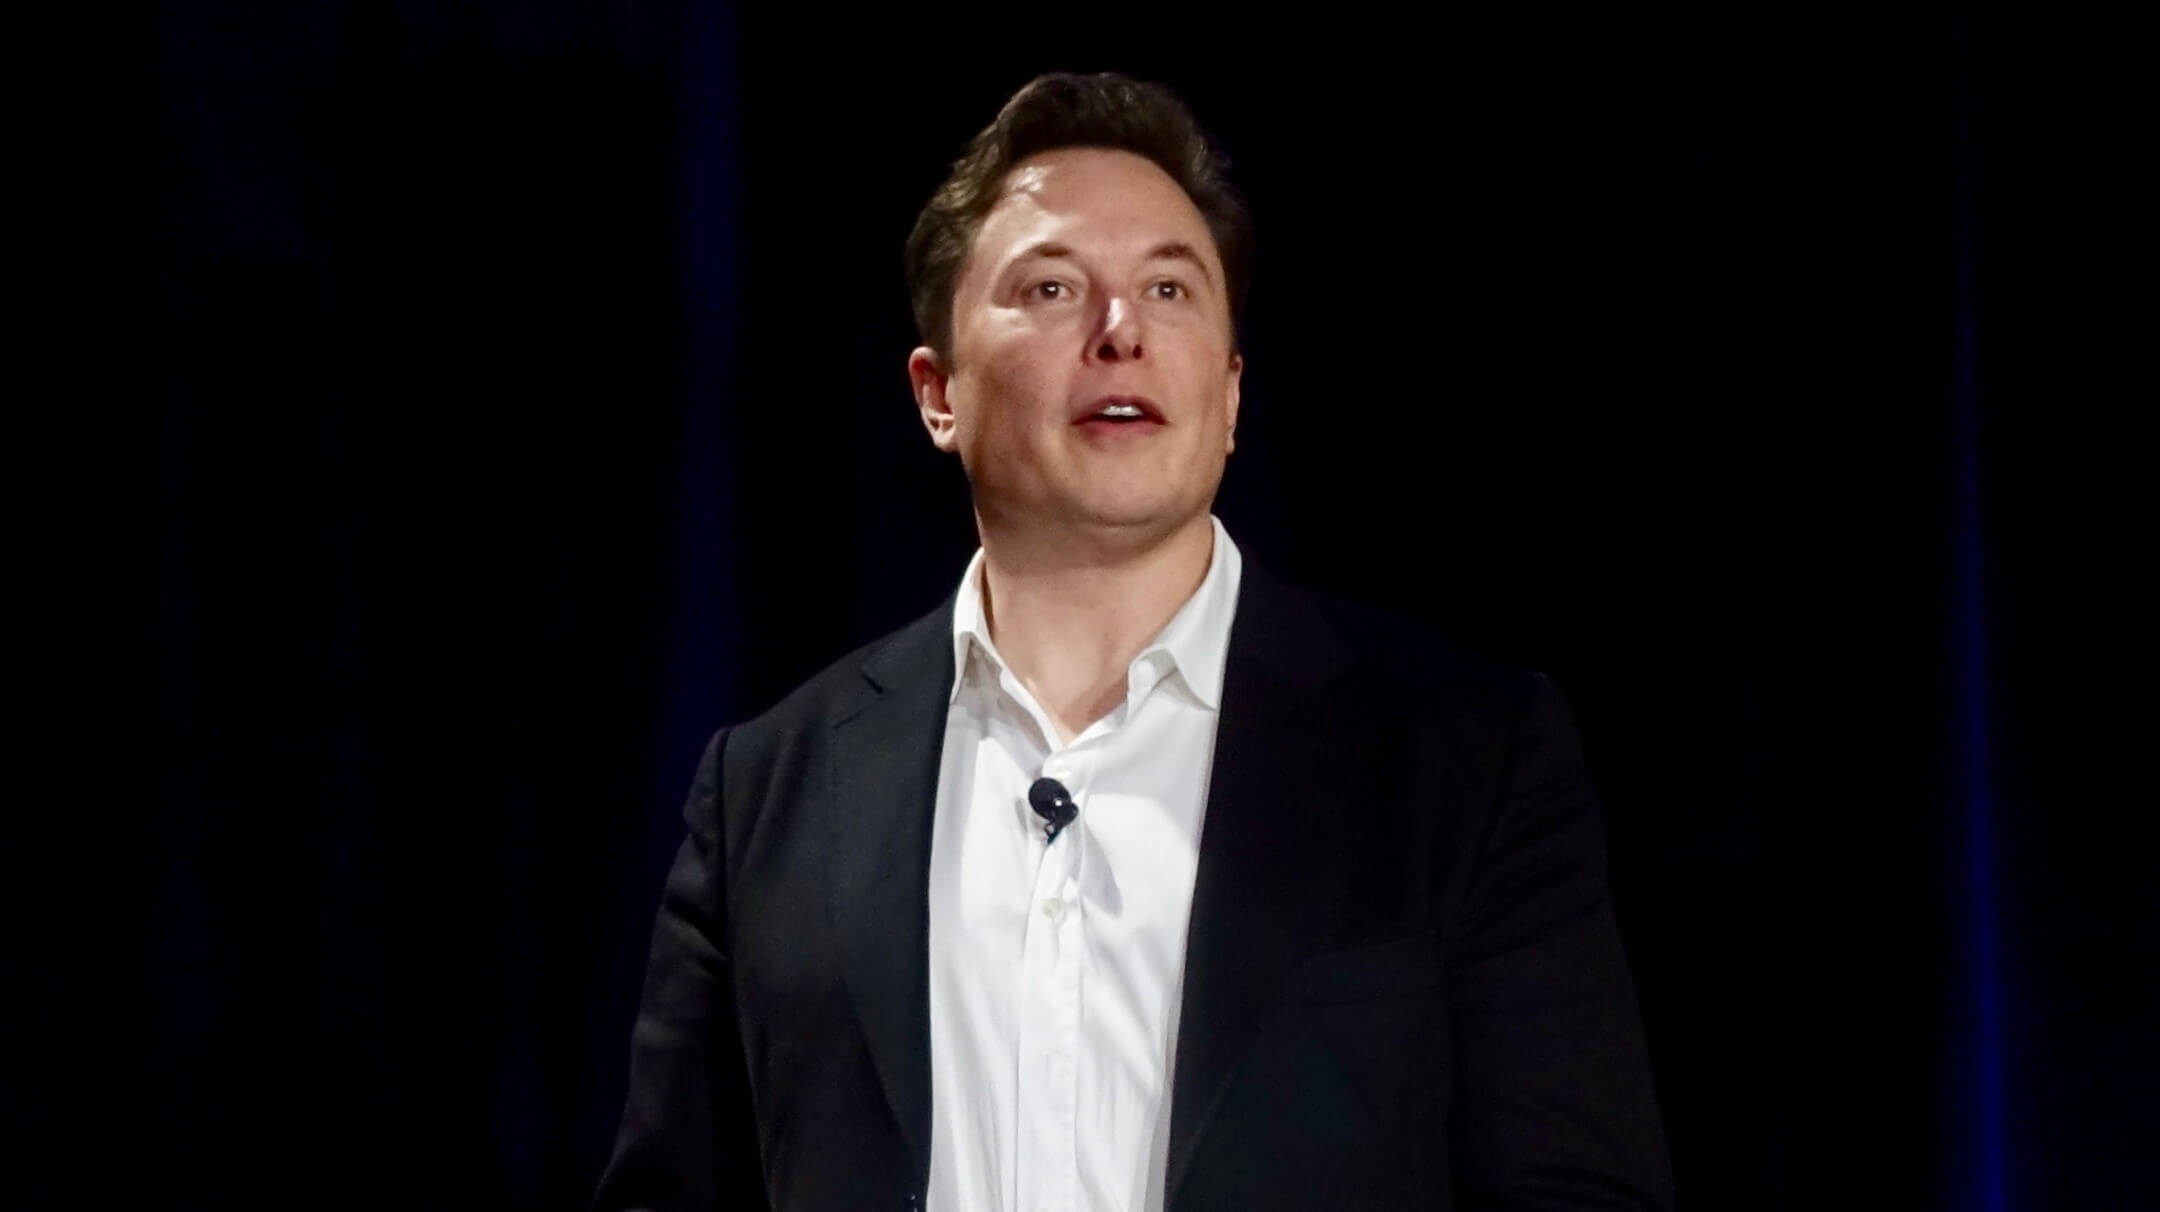 يقول ماسك إن سعر “ التمويل المضمون ” لـ Tesla البالغ 420 دولارًا لم يكن من المفترض أن يكون مضحكًا